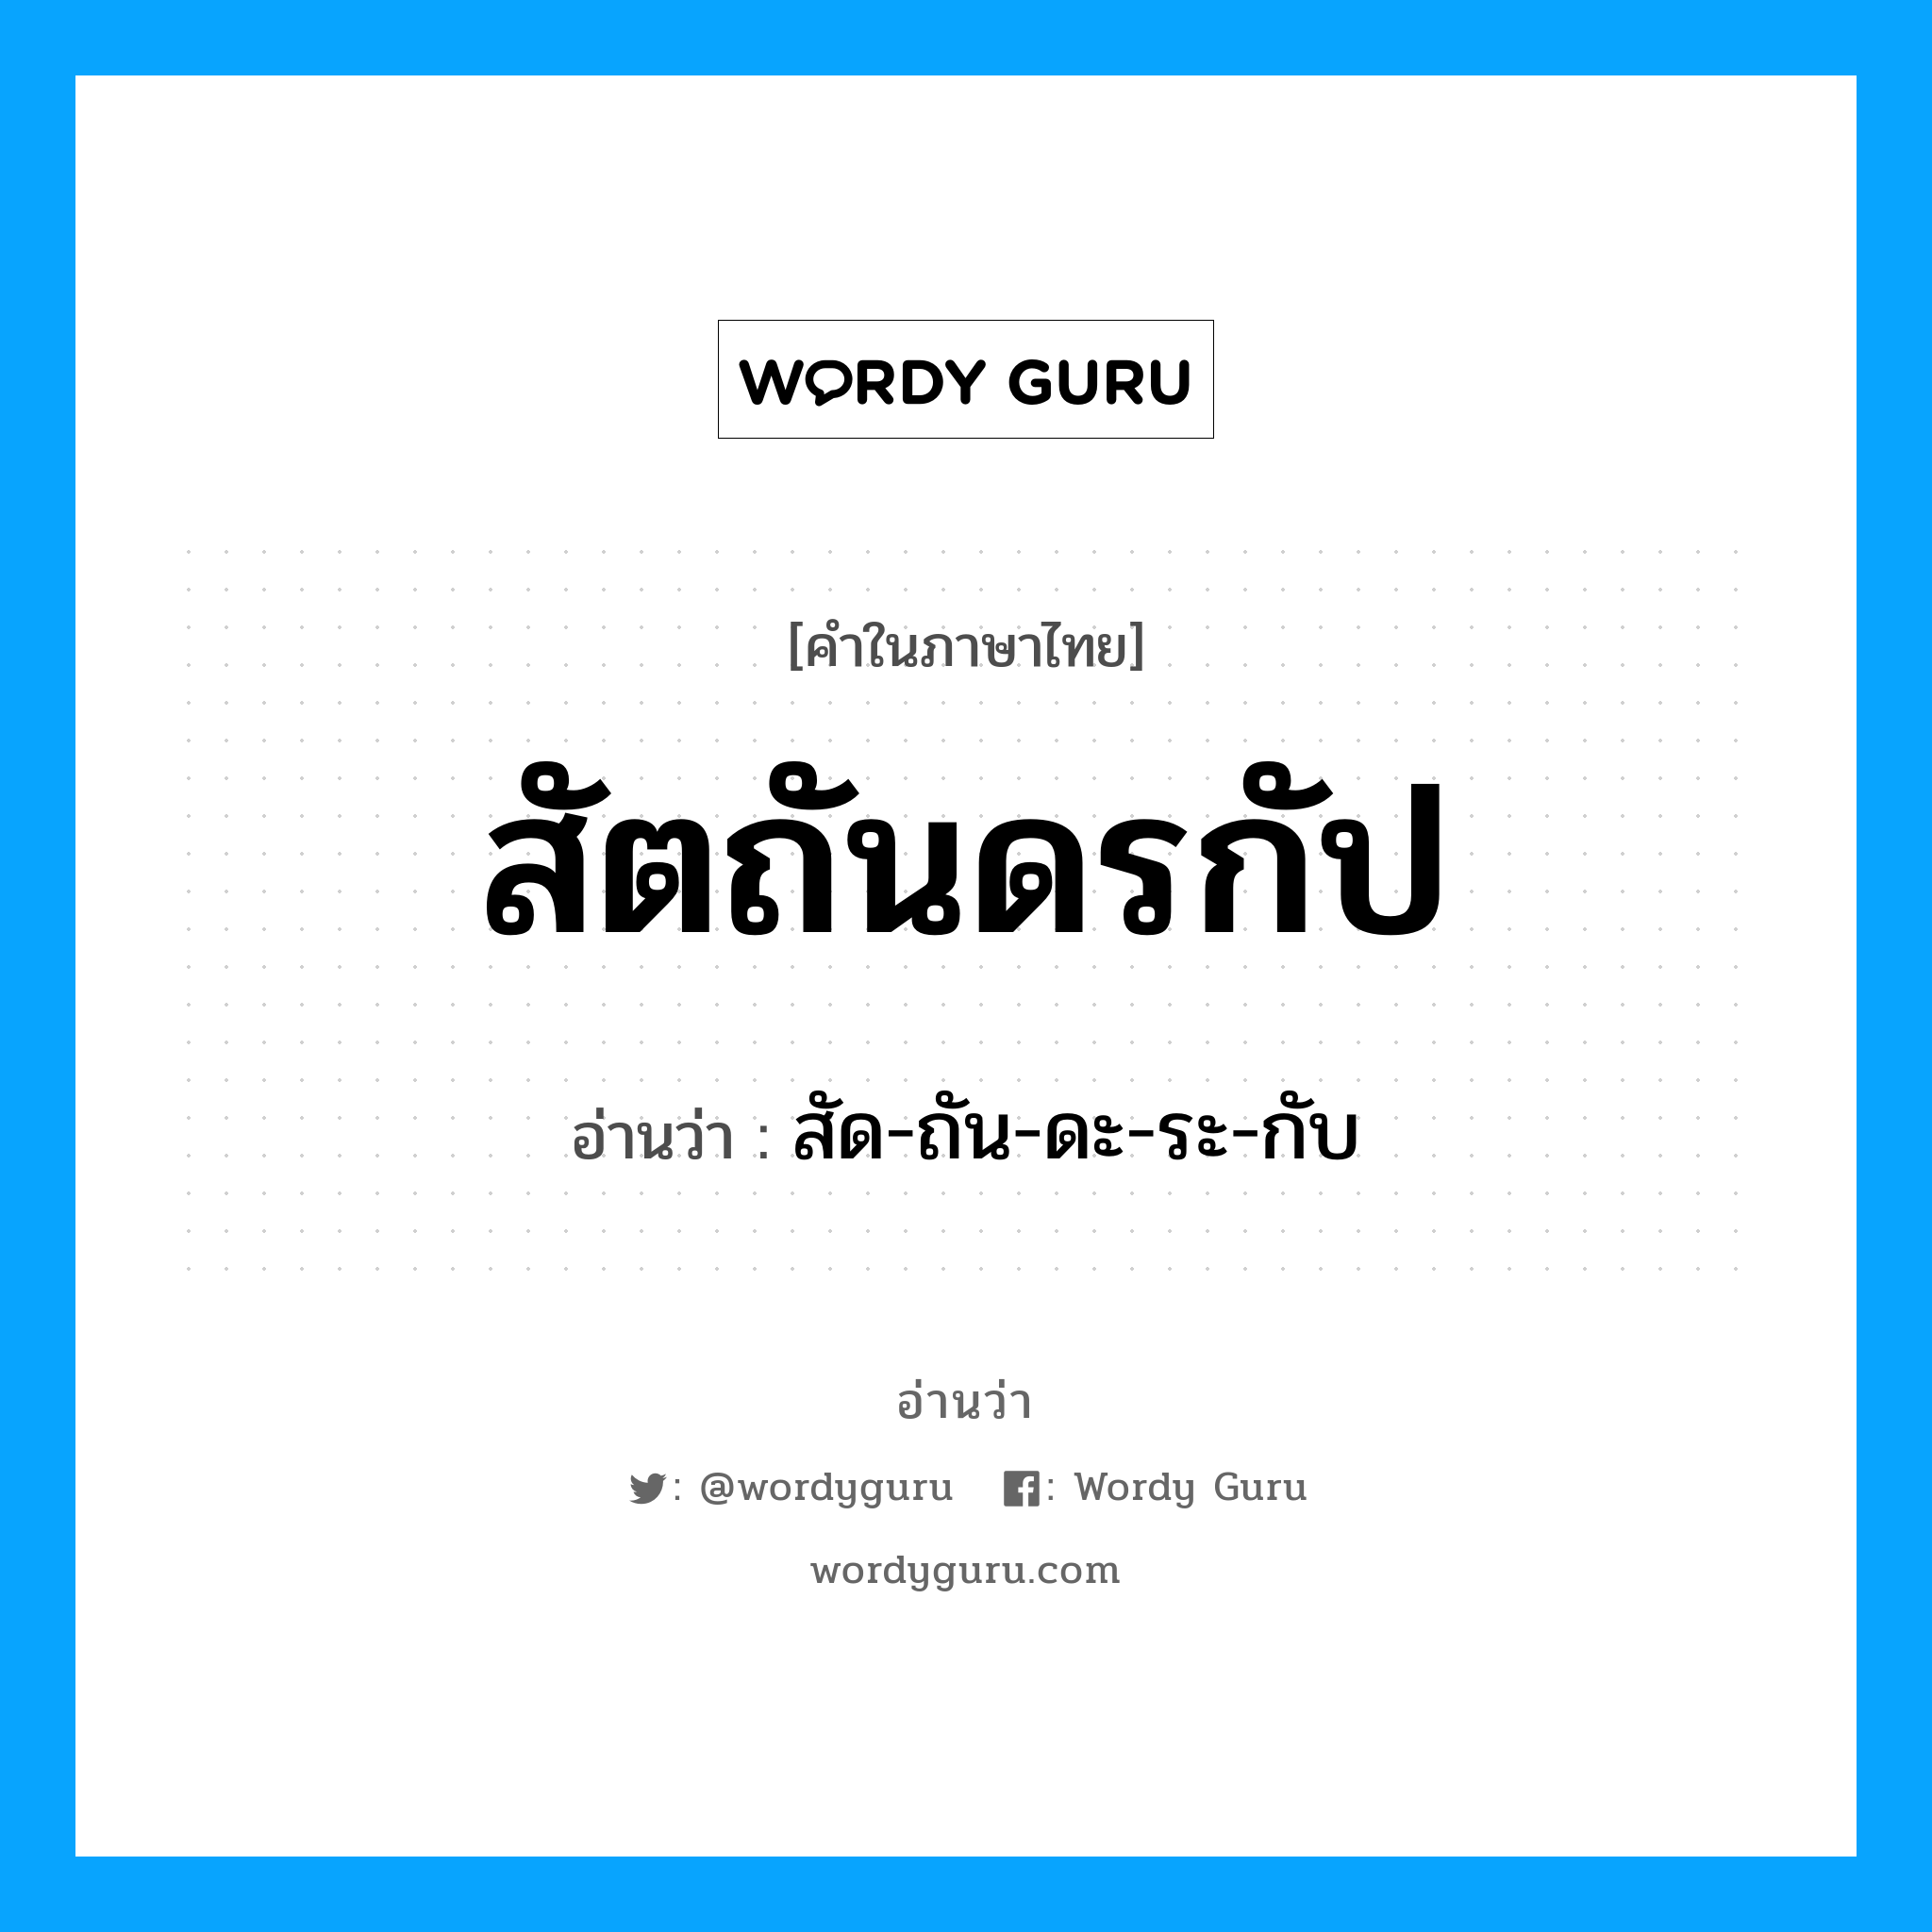 สัด-ถัน-ดะ-ระ-กับ เป็นคำอ่านของคำไหน?, คำในภาษาไทย สัด-ถัน-ดะ-ระ-กับ อ่านว่า สัตถันดรกัป